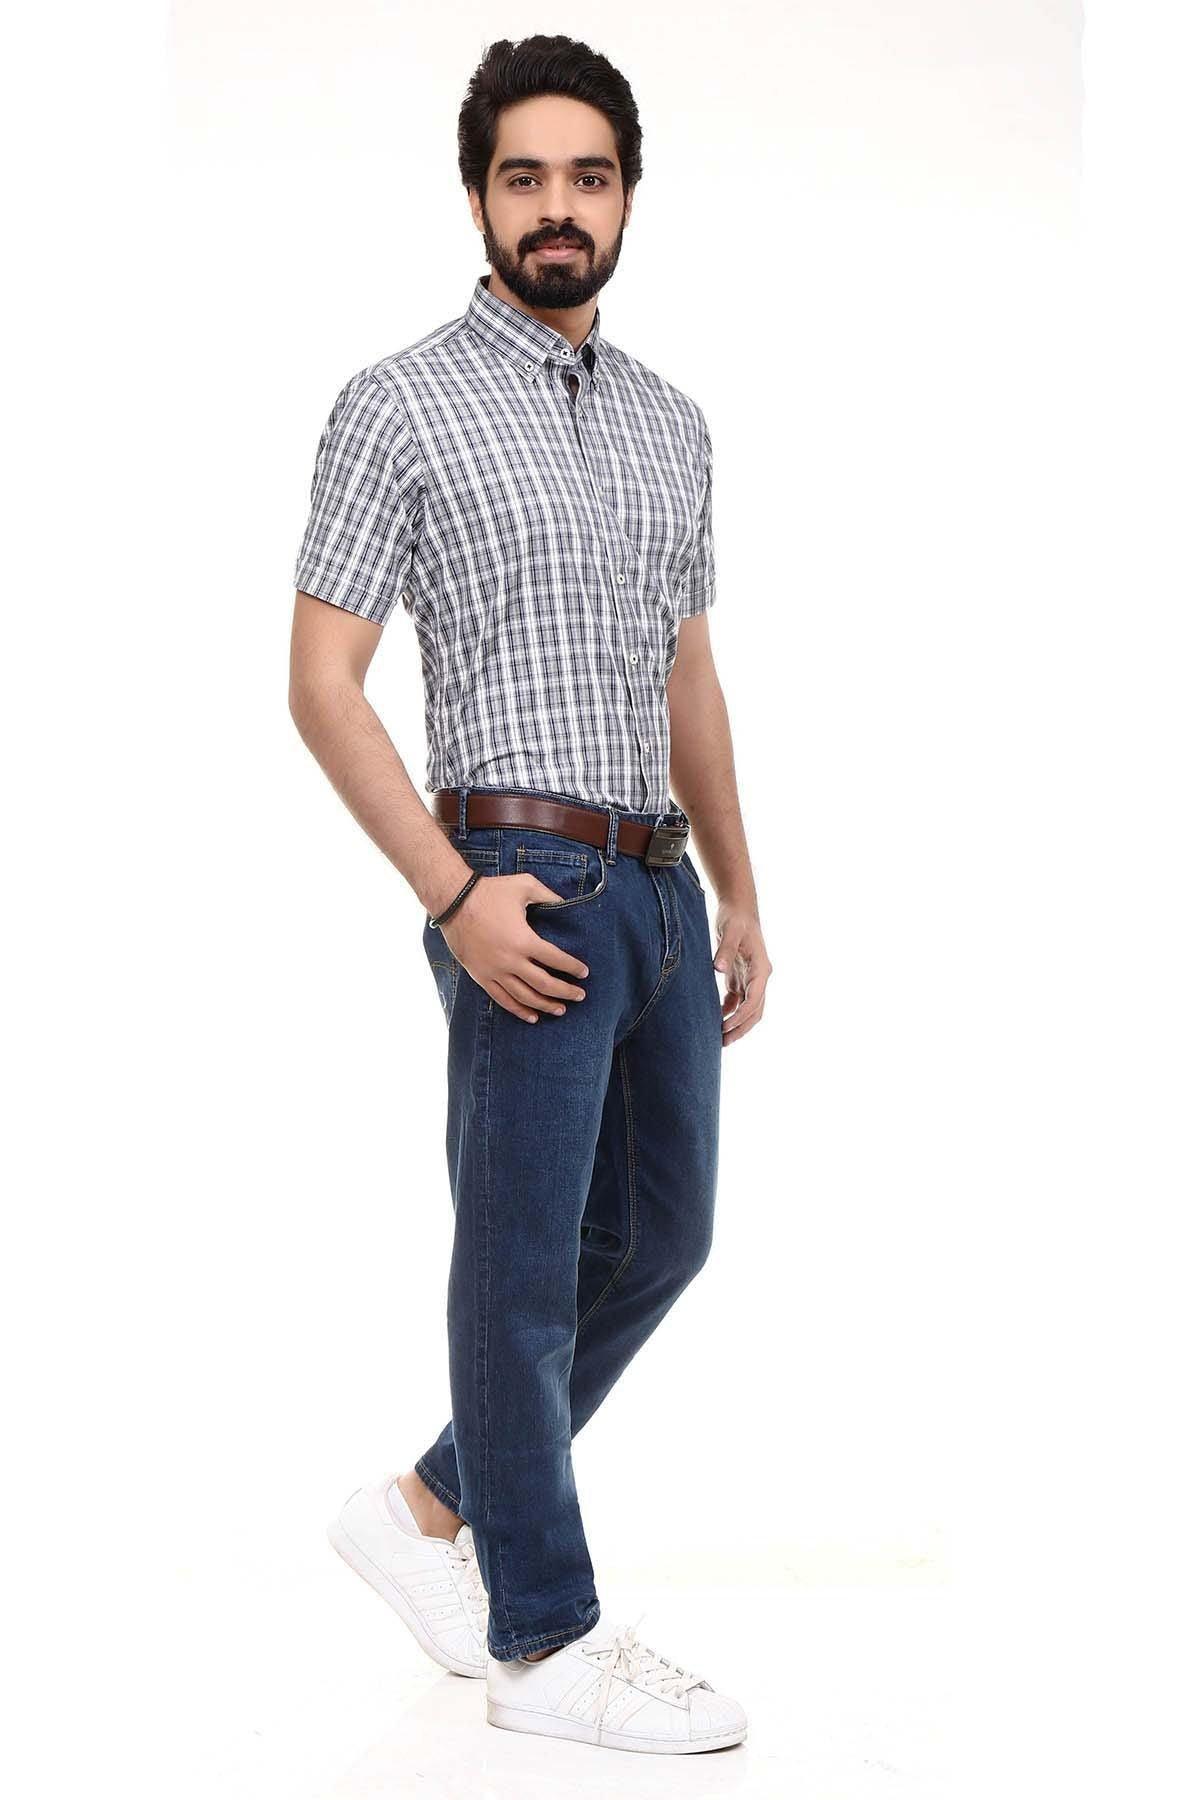 Semi Formal Shirt Half Sleeves Blue White Check at Charcoal Clothing